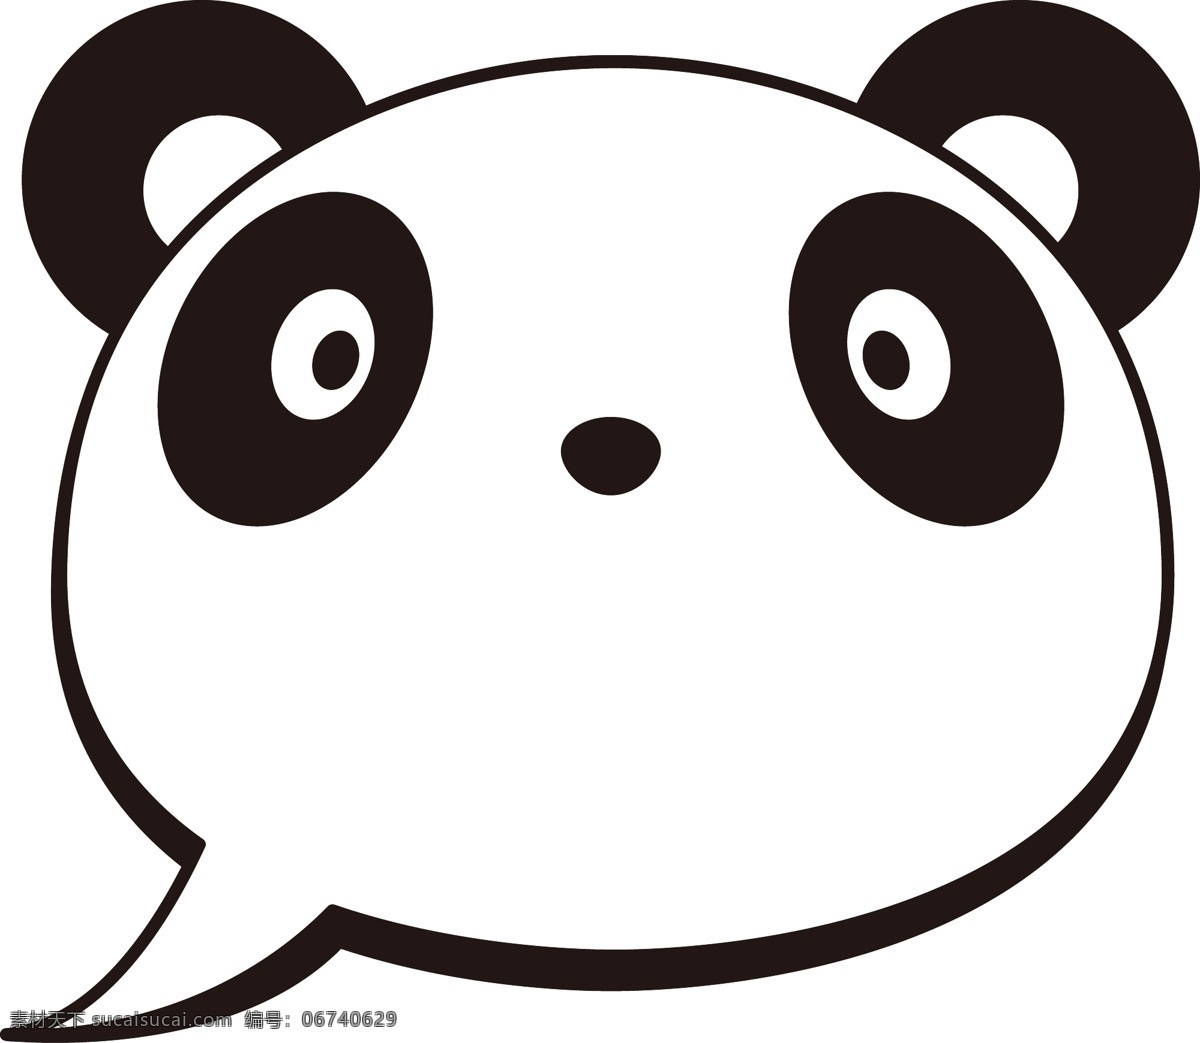 熊猫 边框 卡通 动物 商用 元素 卡通动物边框 可商用